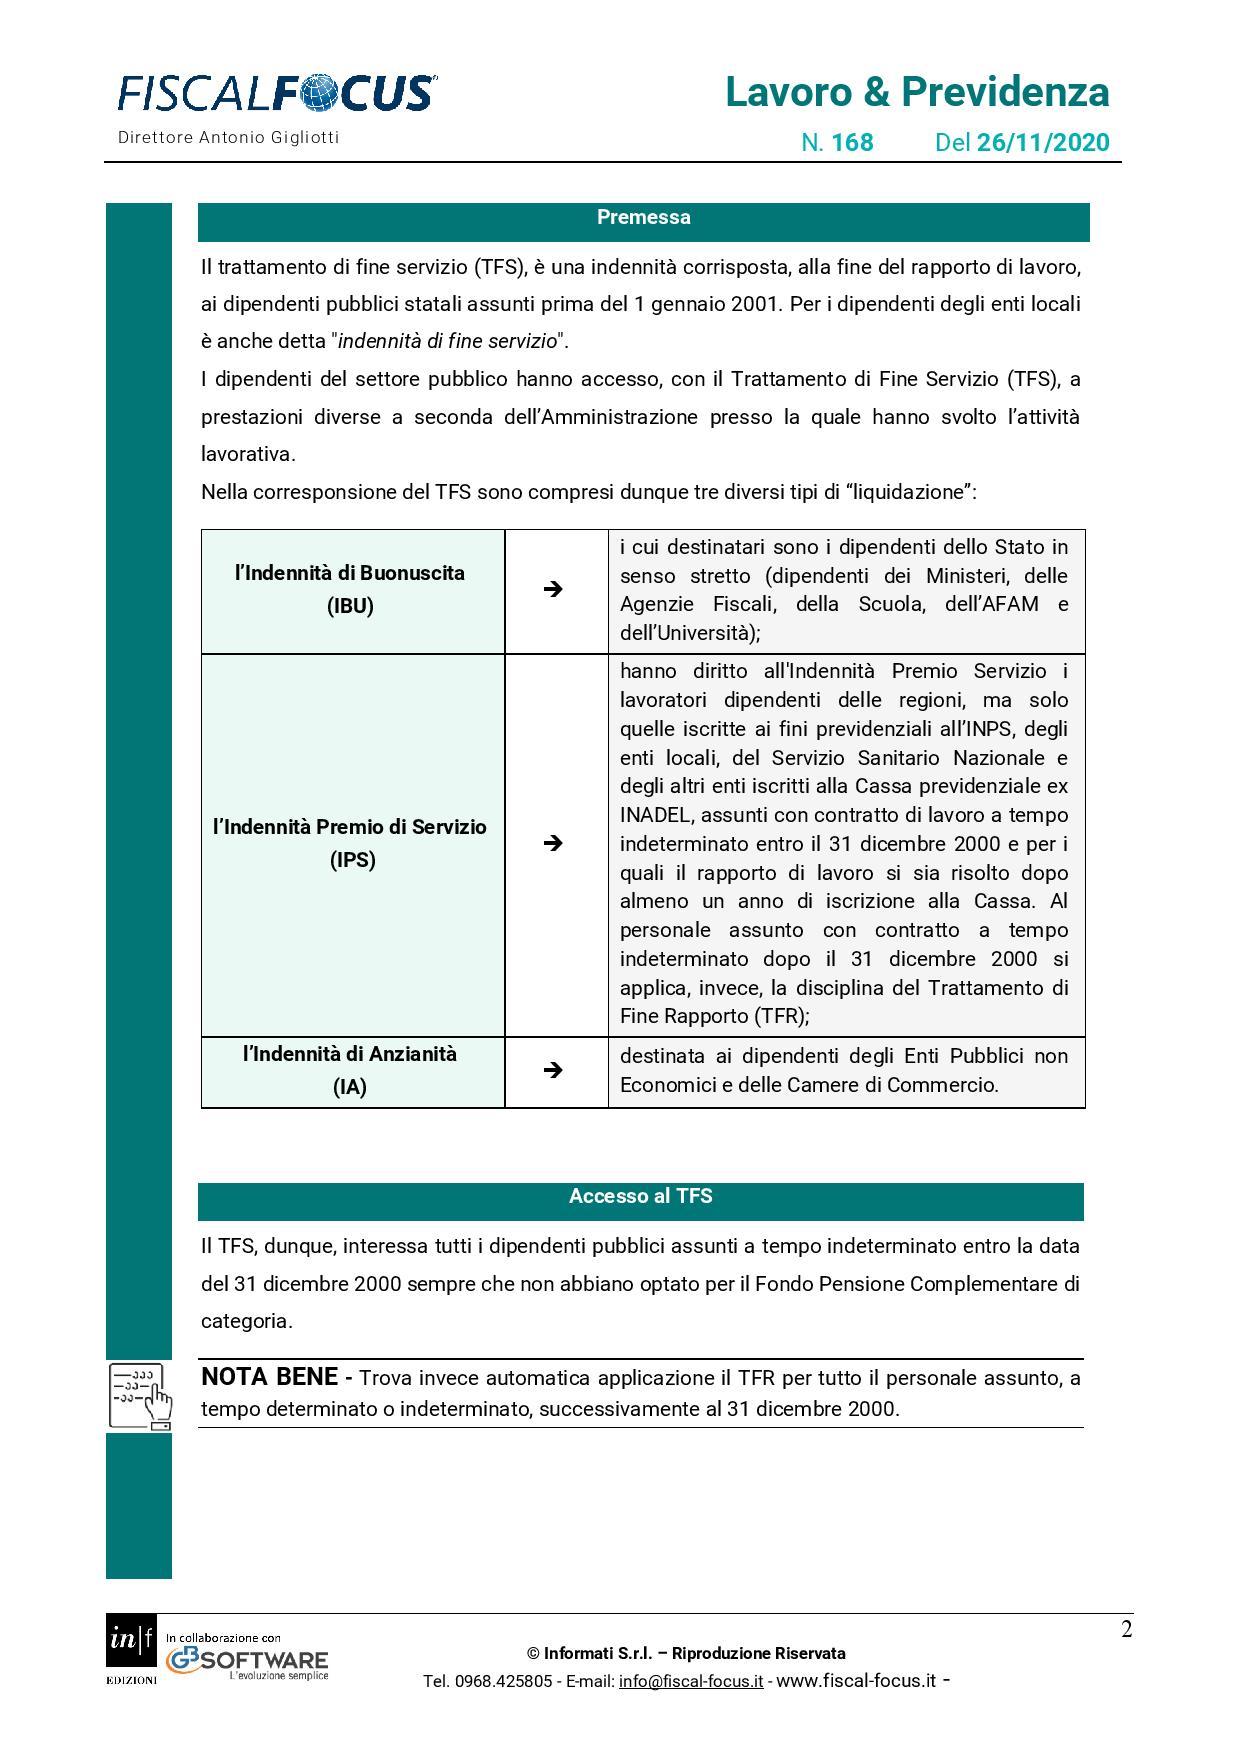 Lavoro e Previdenza n. 168 del 26.11.2020 TFS dipendenti pubblici page 002